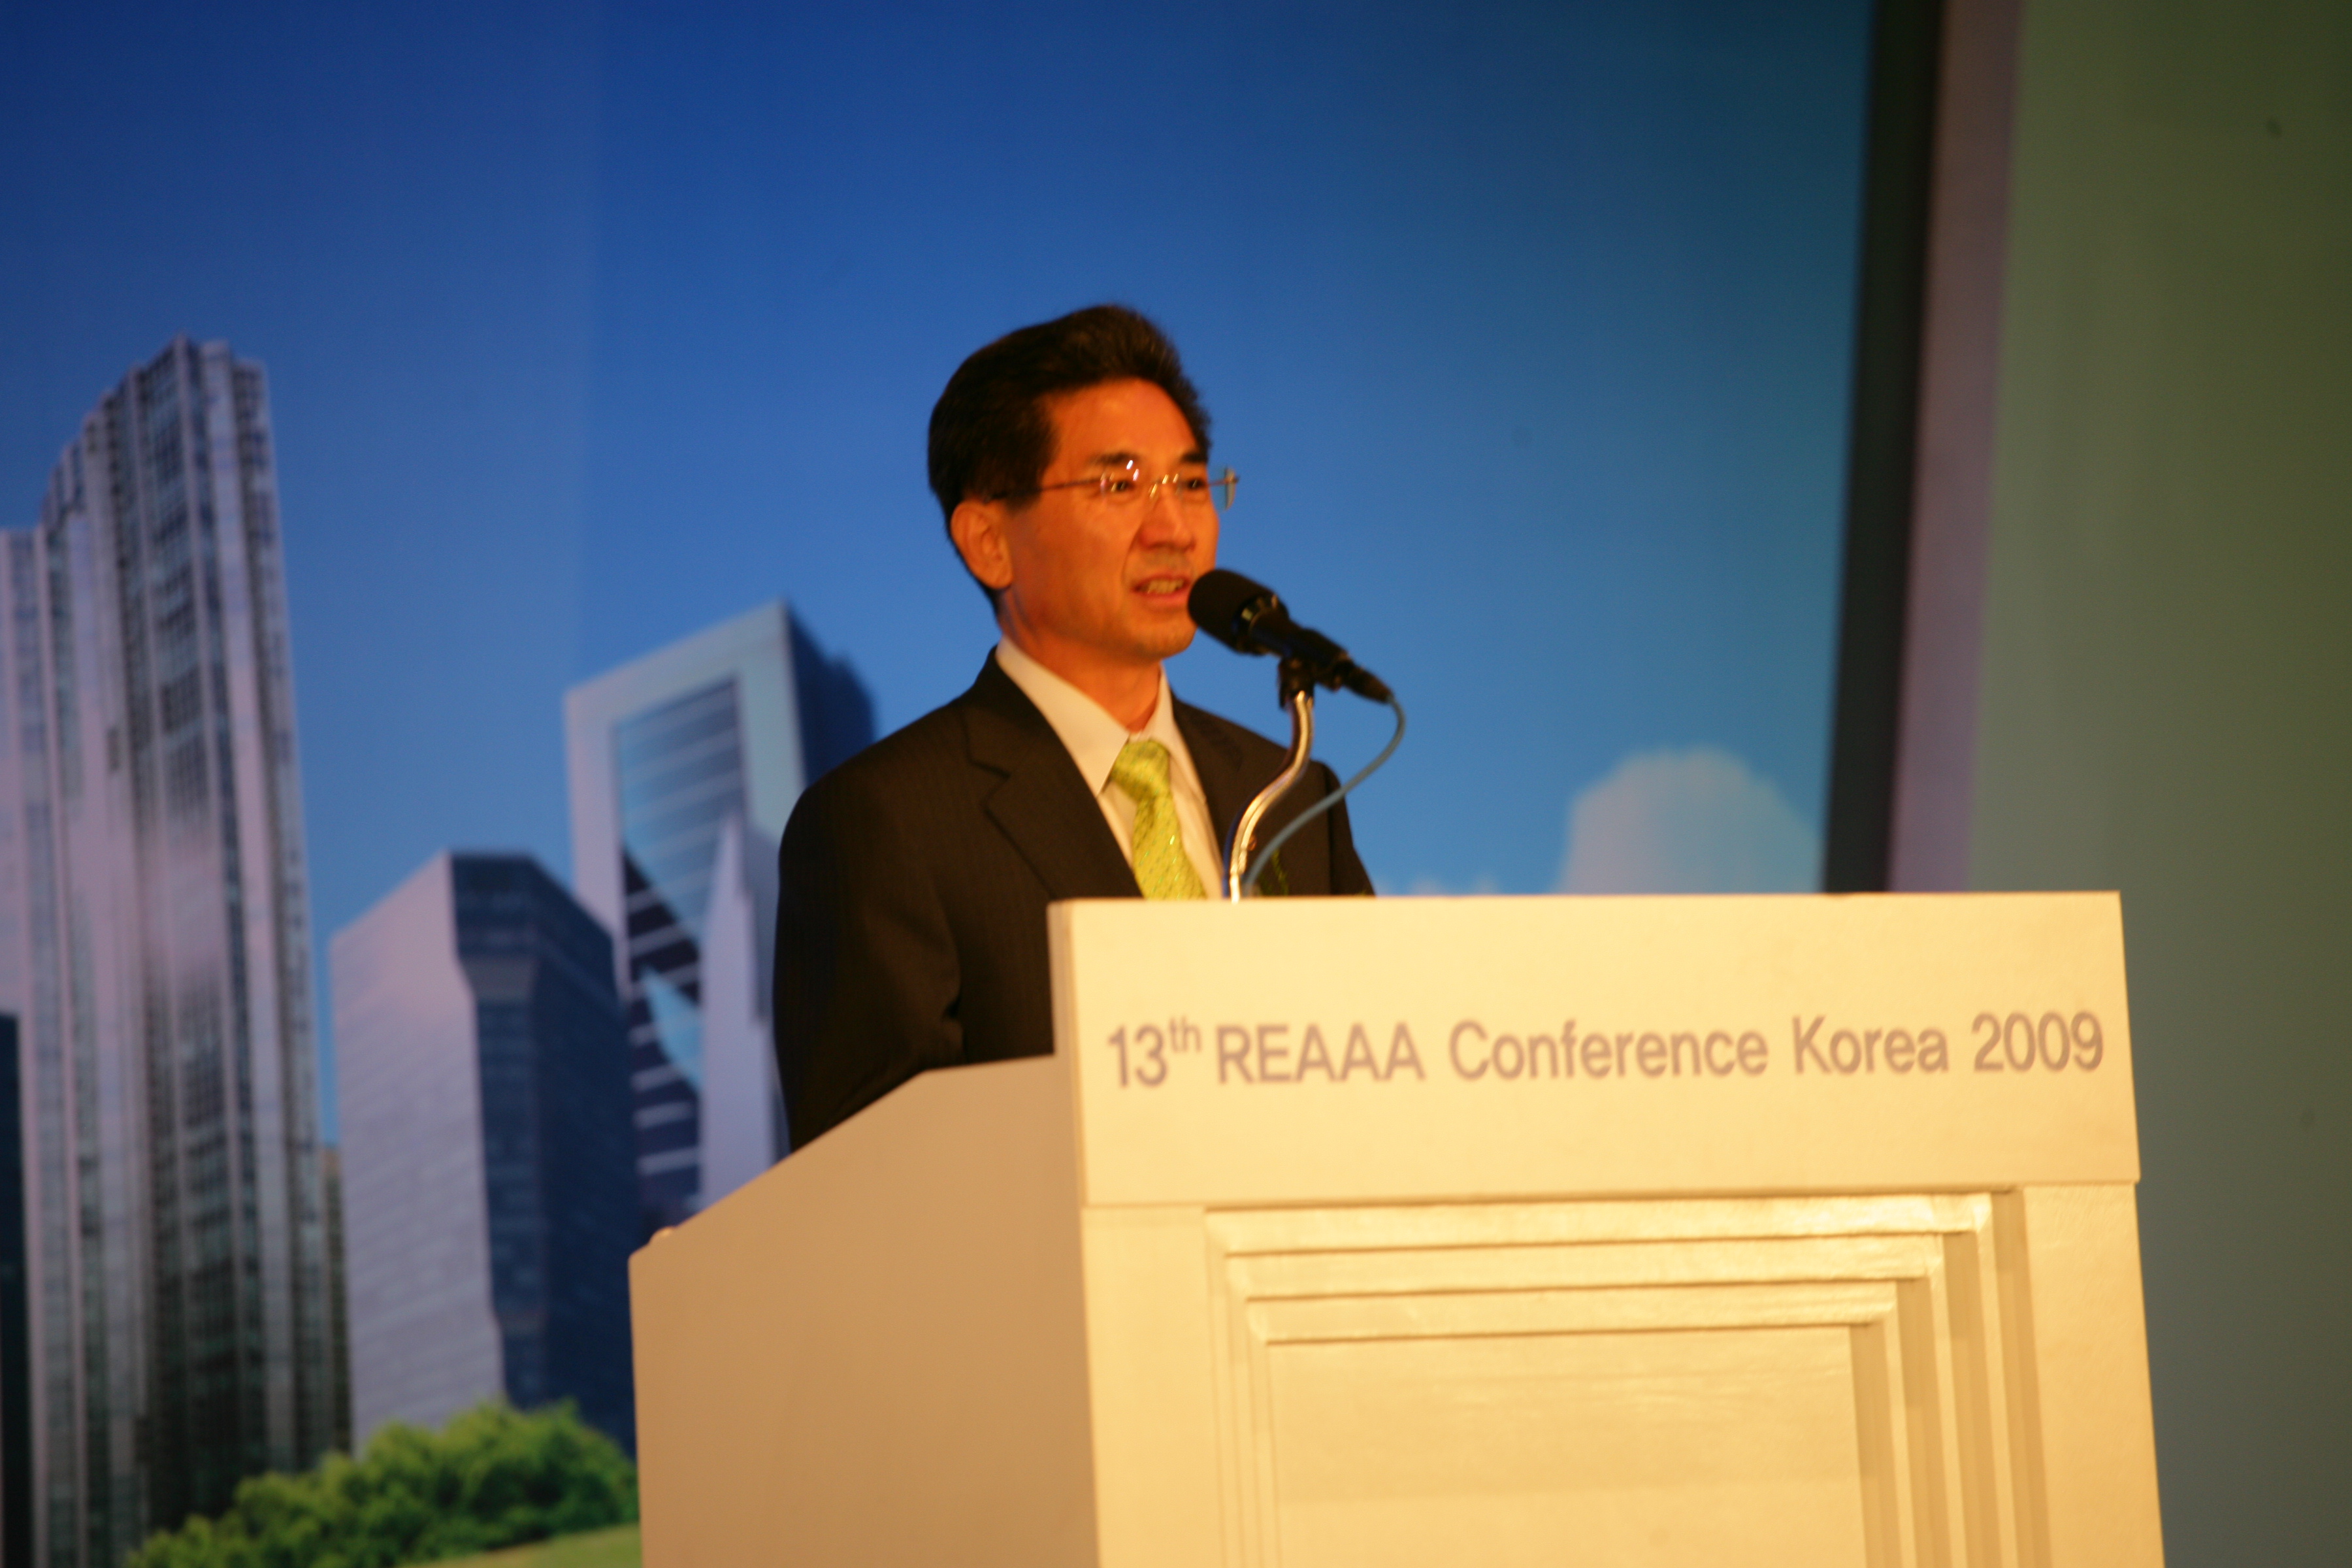 제13차 REAAA(아시아대양주 도로기술협회) 컨퍼런스 - 포토이미지